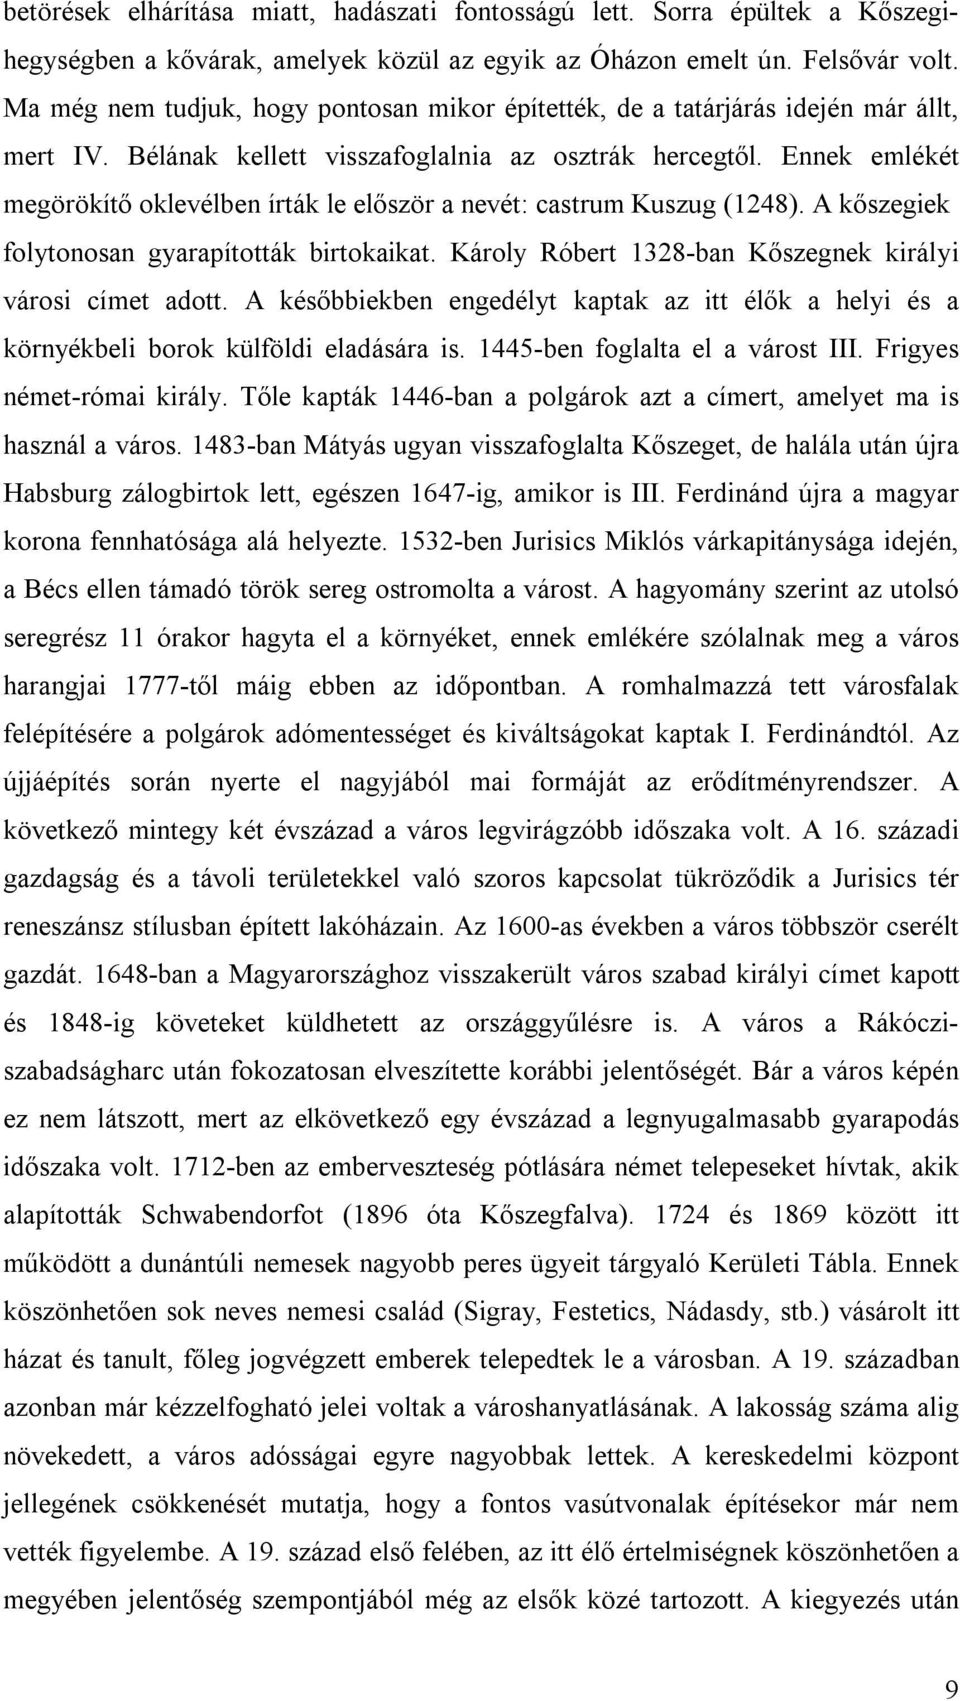 Ennek emlékét megörökítő oklevélben írták le először a nevét: castrum Kuszug (1248). A kőszegiek folytonosan gyarapították birtokaikat. Károly Róbert 1328-ban Kőszegnek királyi városi címet adott.